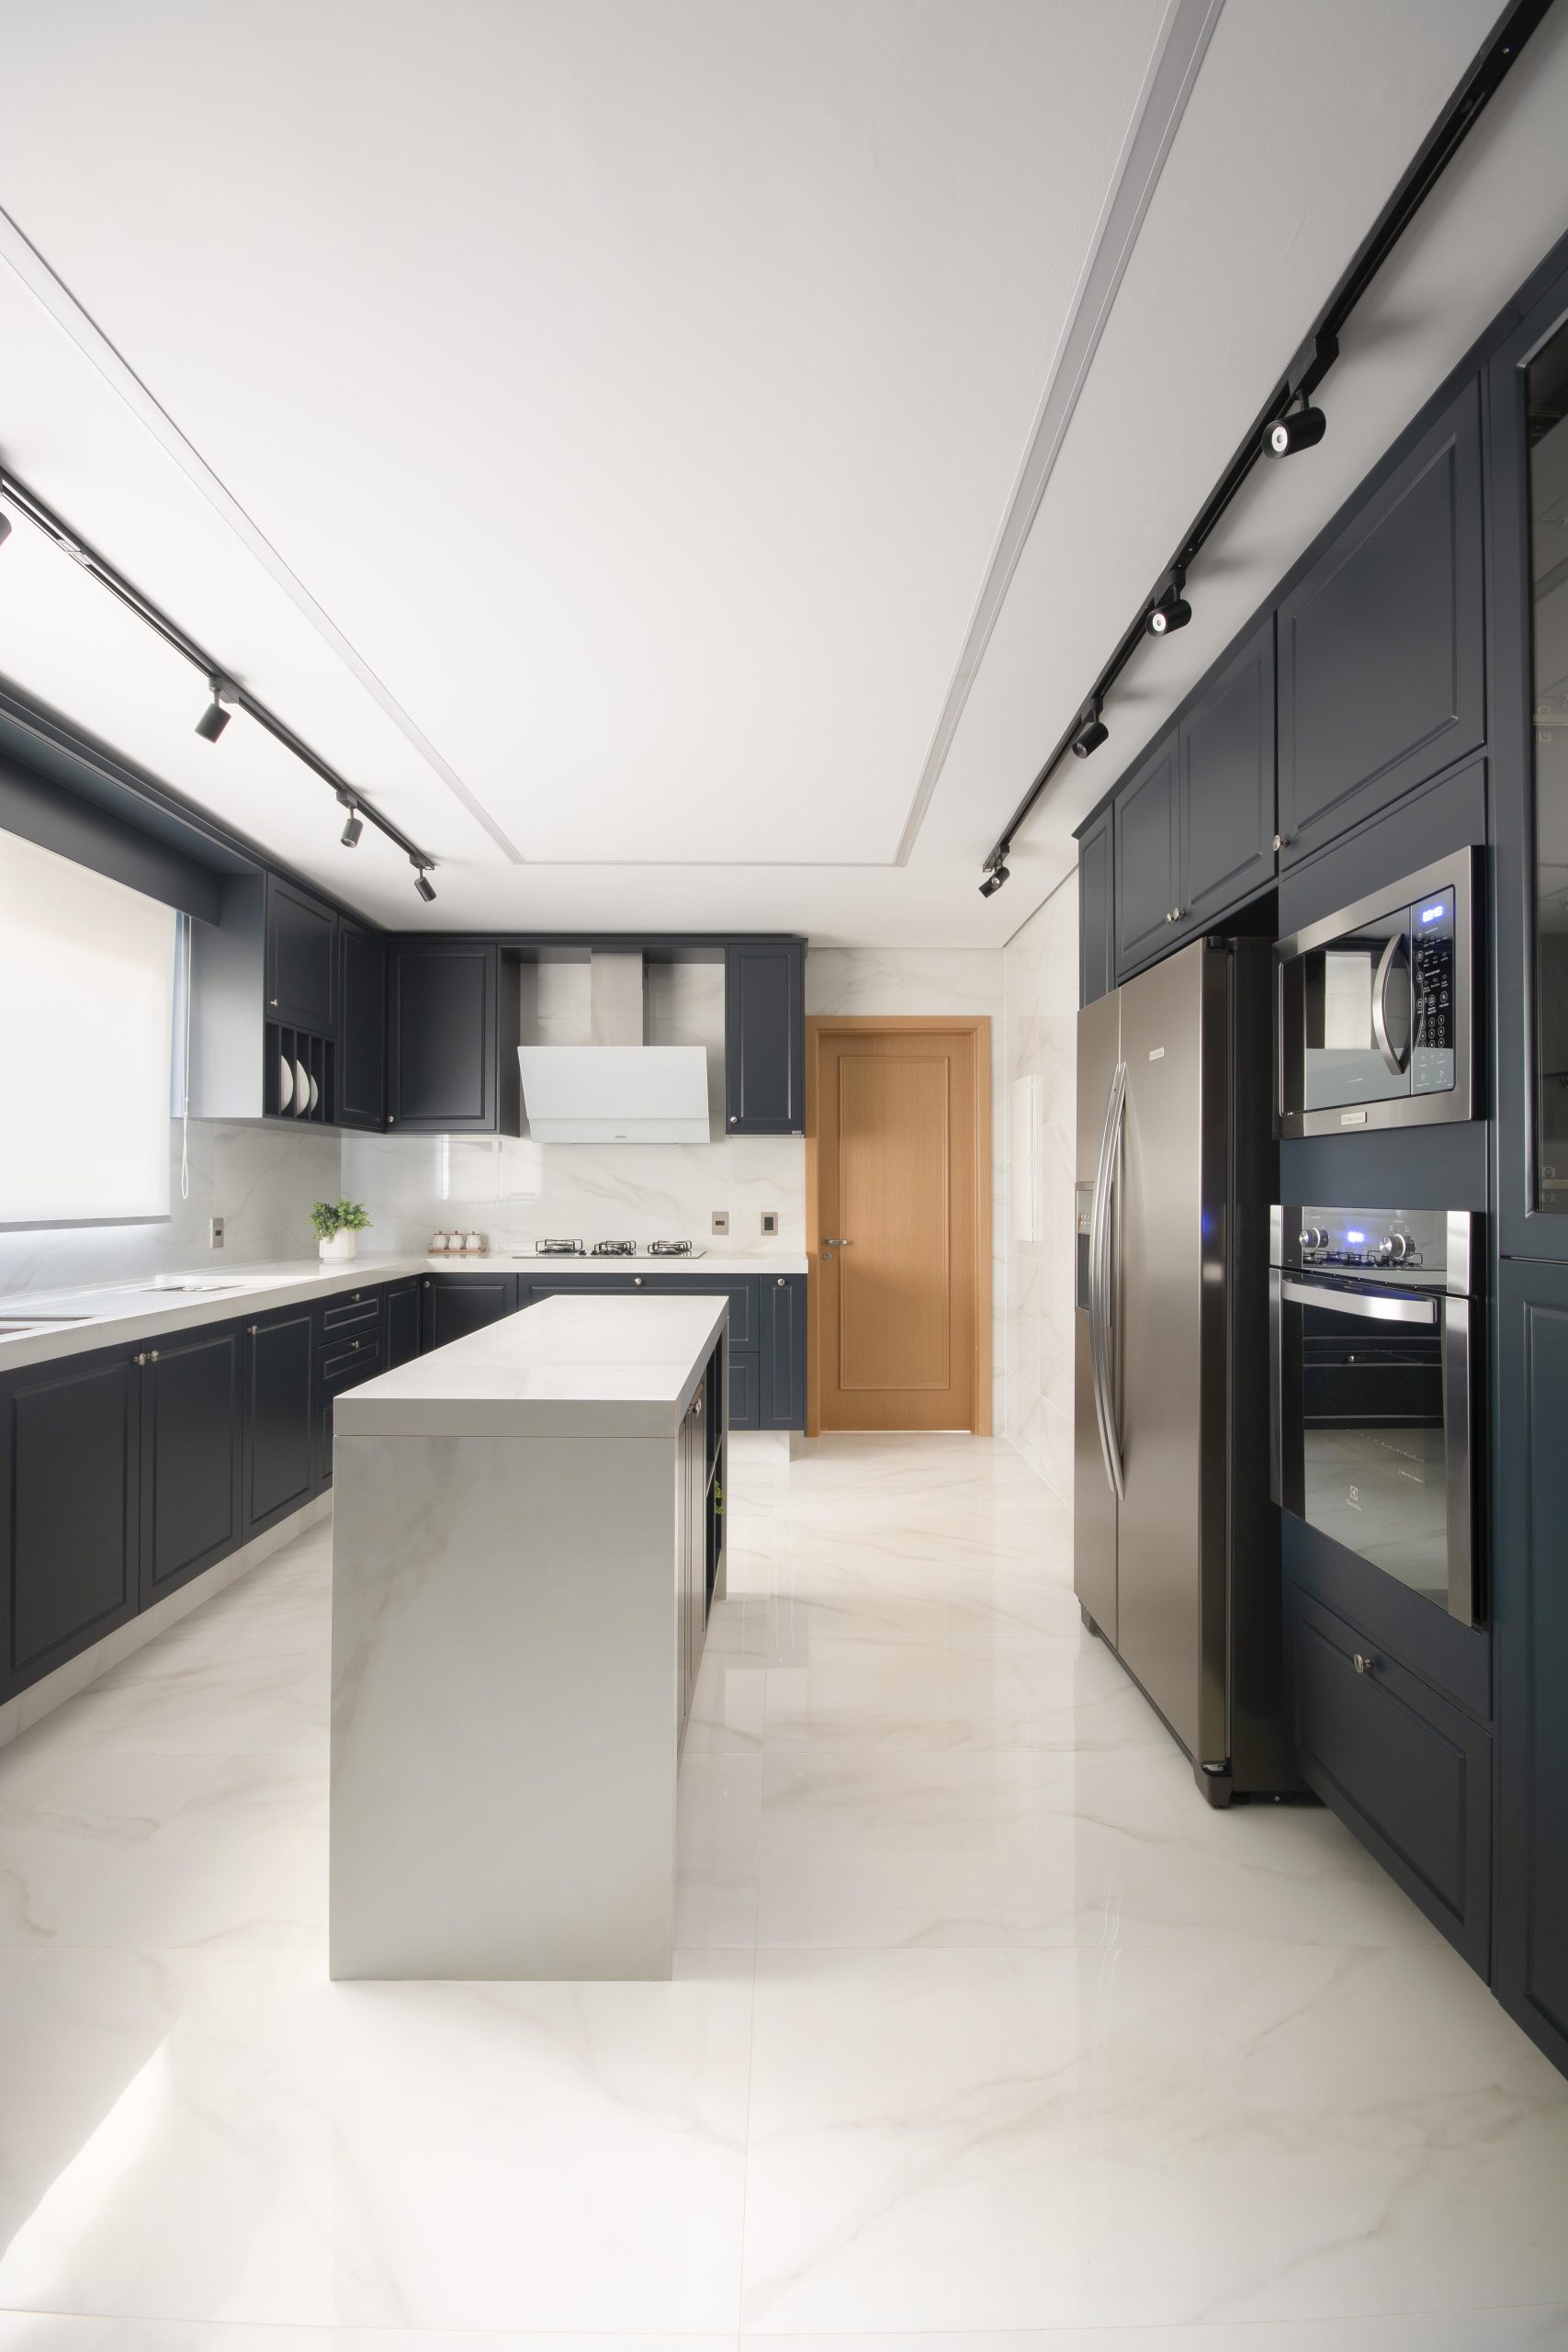 Cozinha é um dos primeiros ambientes para organizar após a mudança residencial